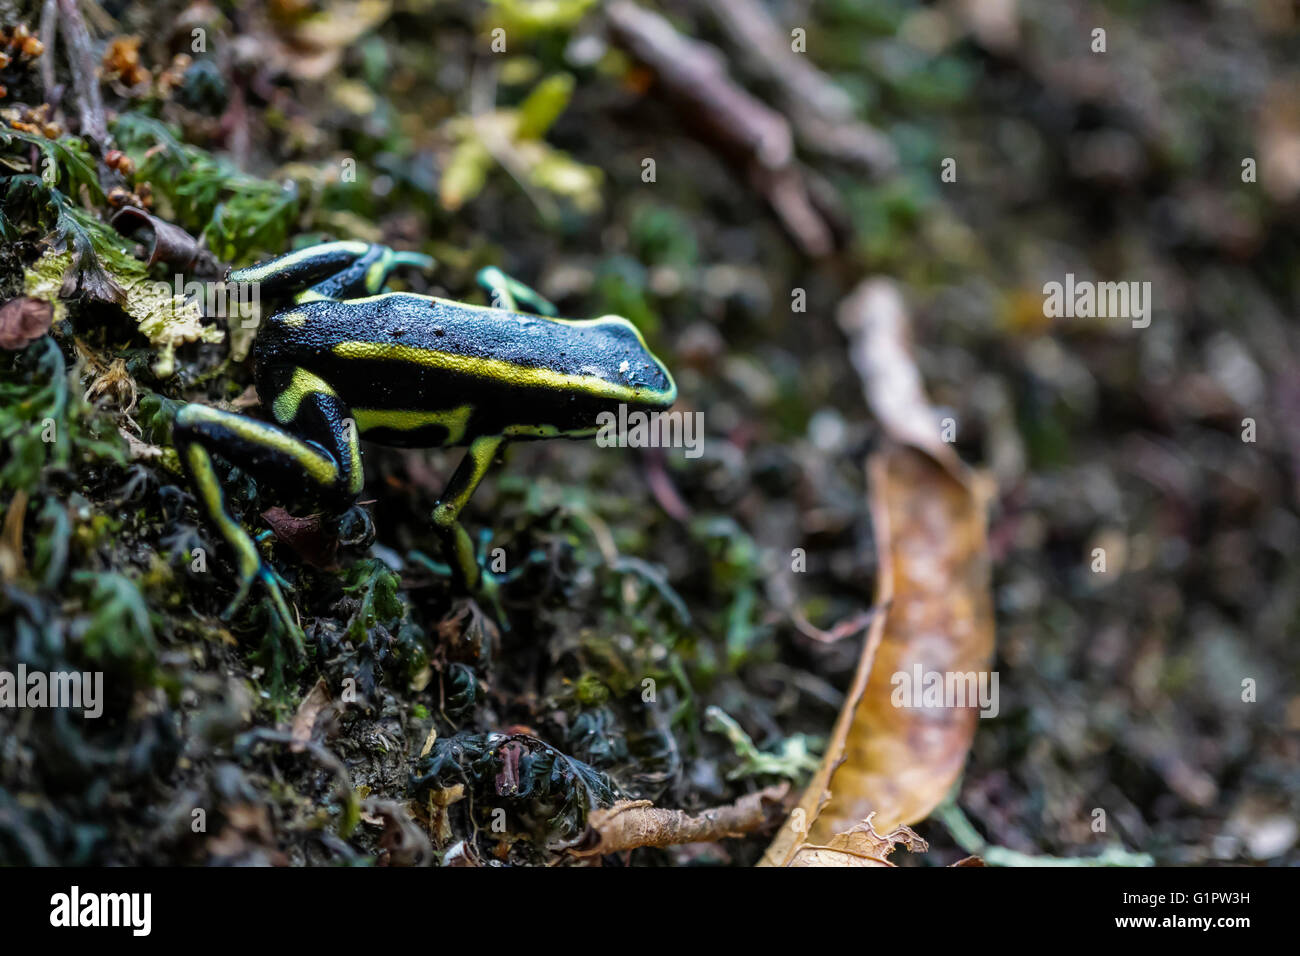 Poison dart frog (también conocida como la rana venenosa de dardo, la rana venenosa o anteriormente conocido como la rana flecha venenosa) fotografiado en el Amazonas Foto de stock